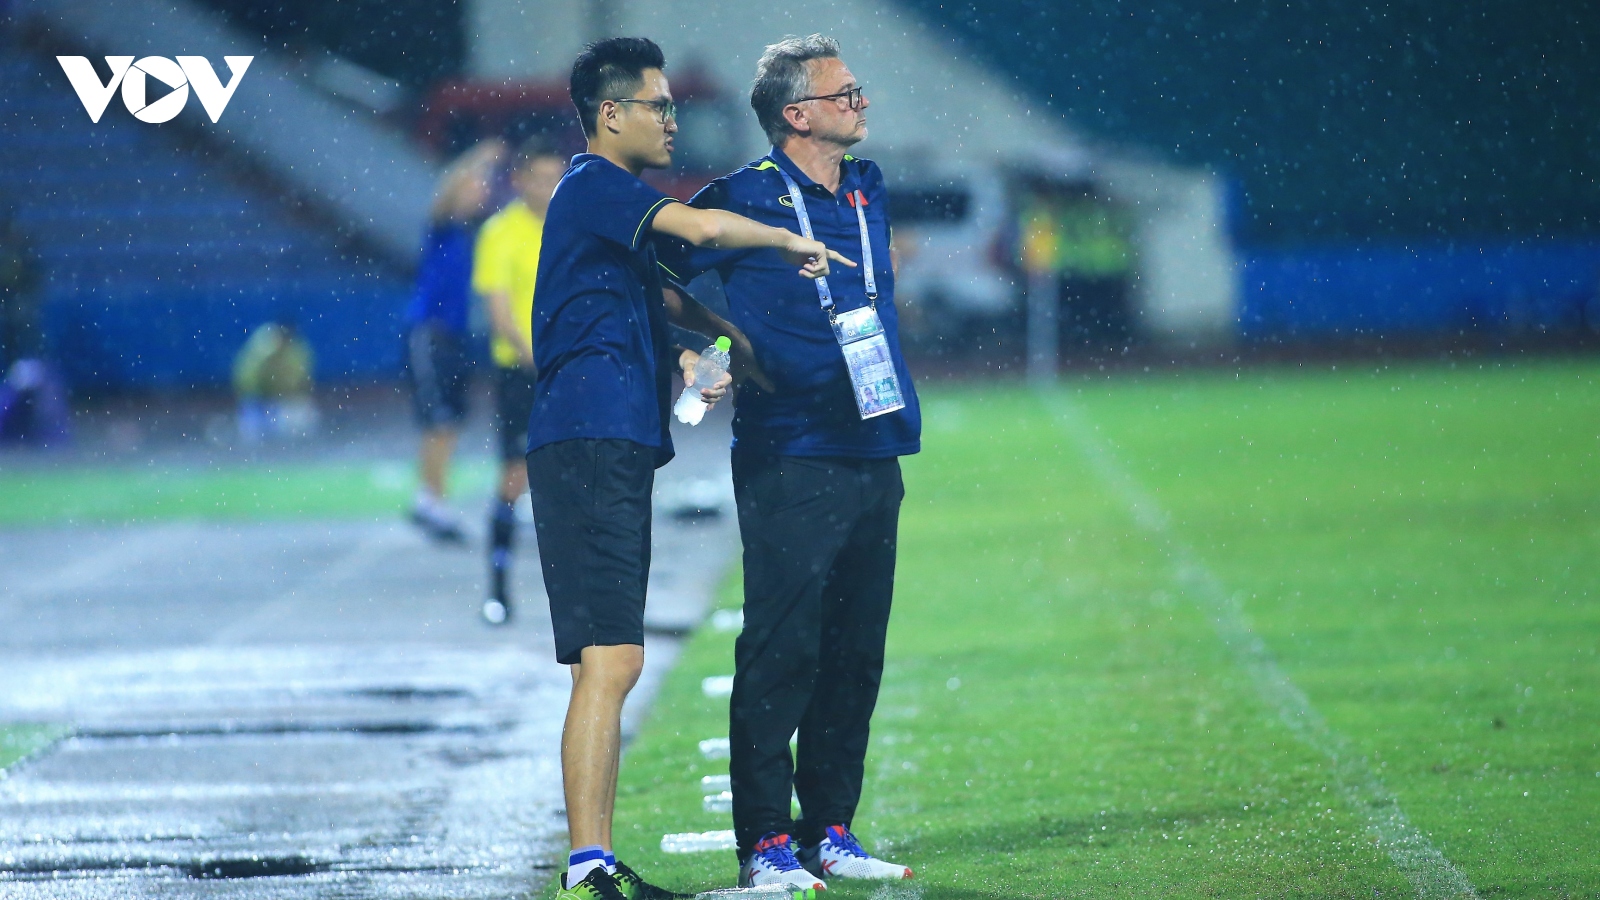 HLV Troussier ''đội mưa'' chỉ đạo trong ngày U23 Việt Nam đoạt vé dự VCK châu Á